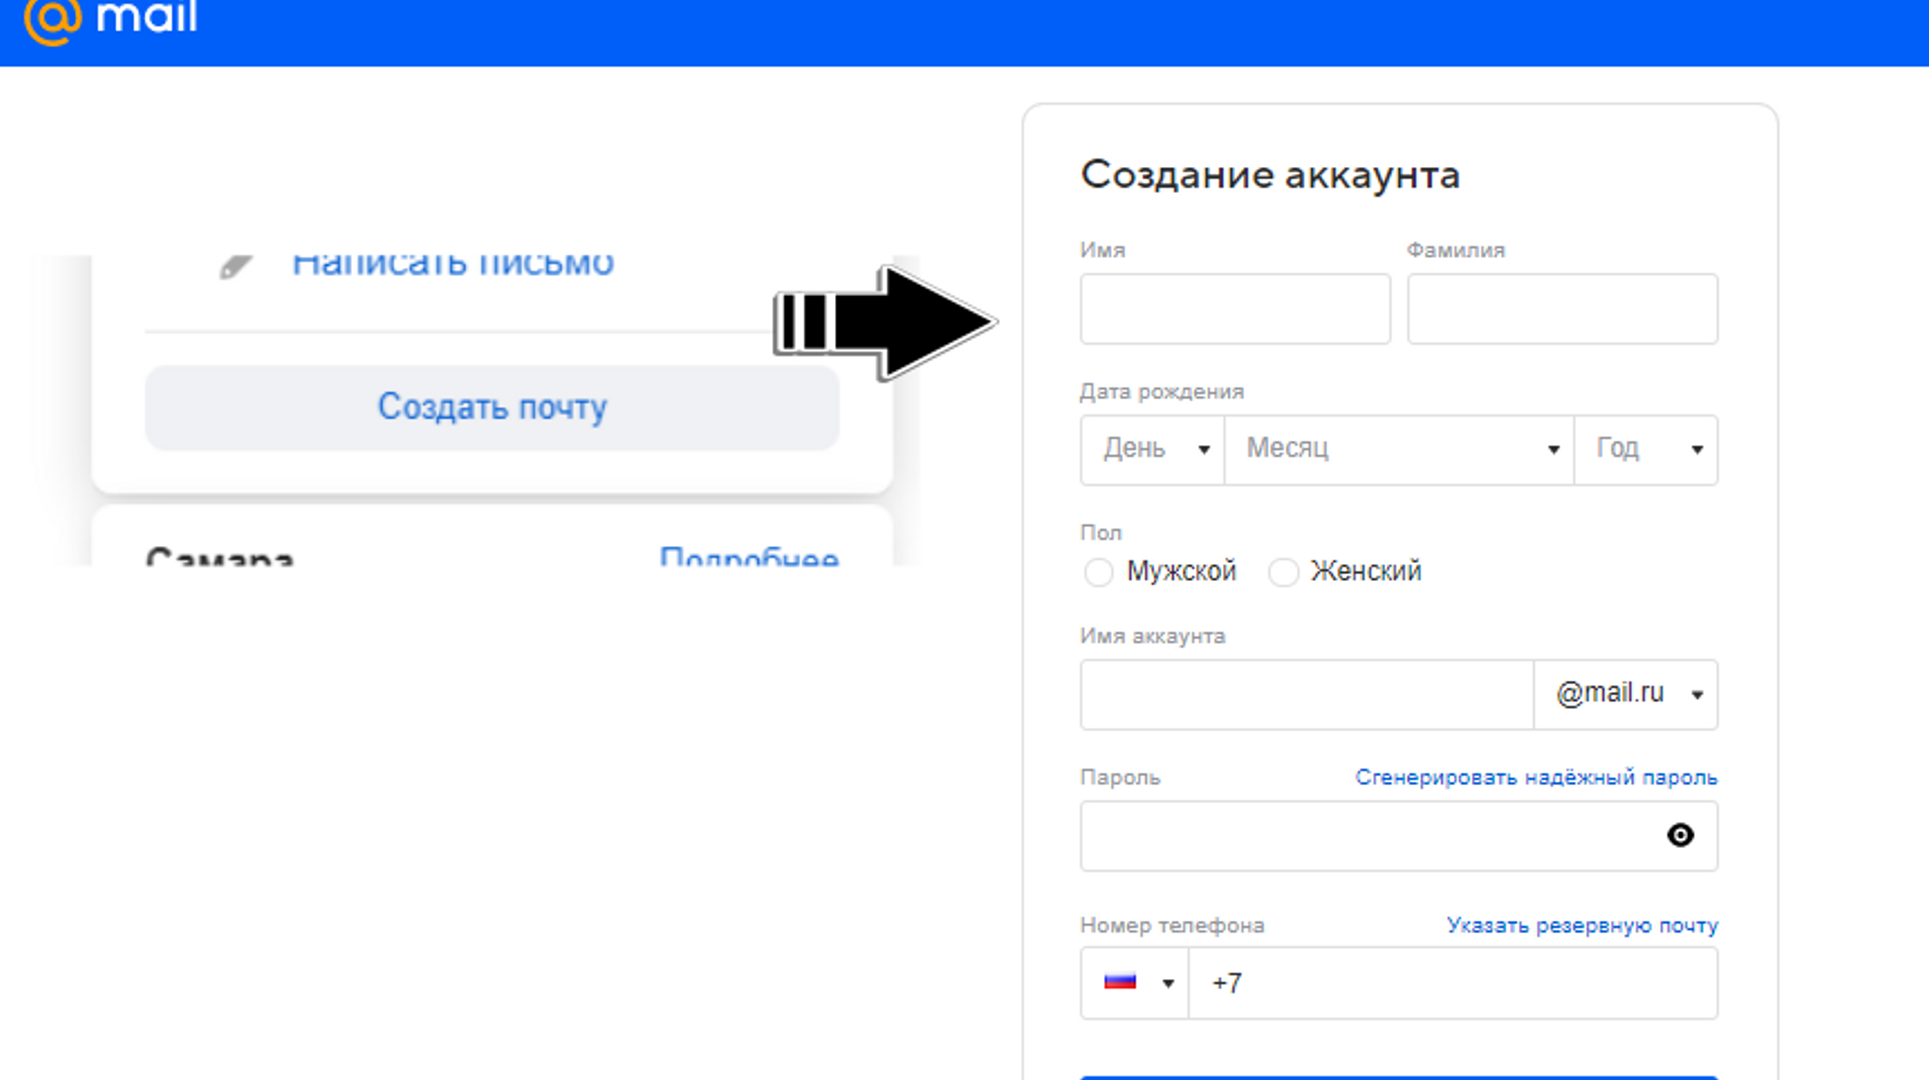 Создание аккаунта на mail.ru